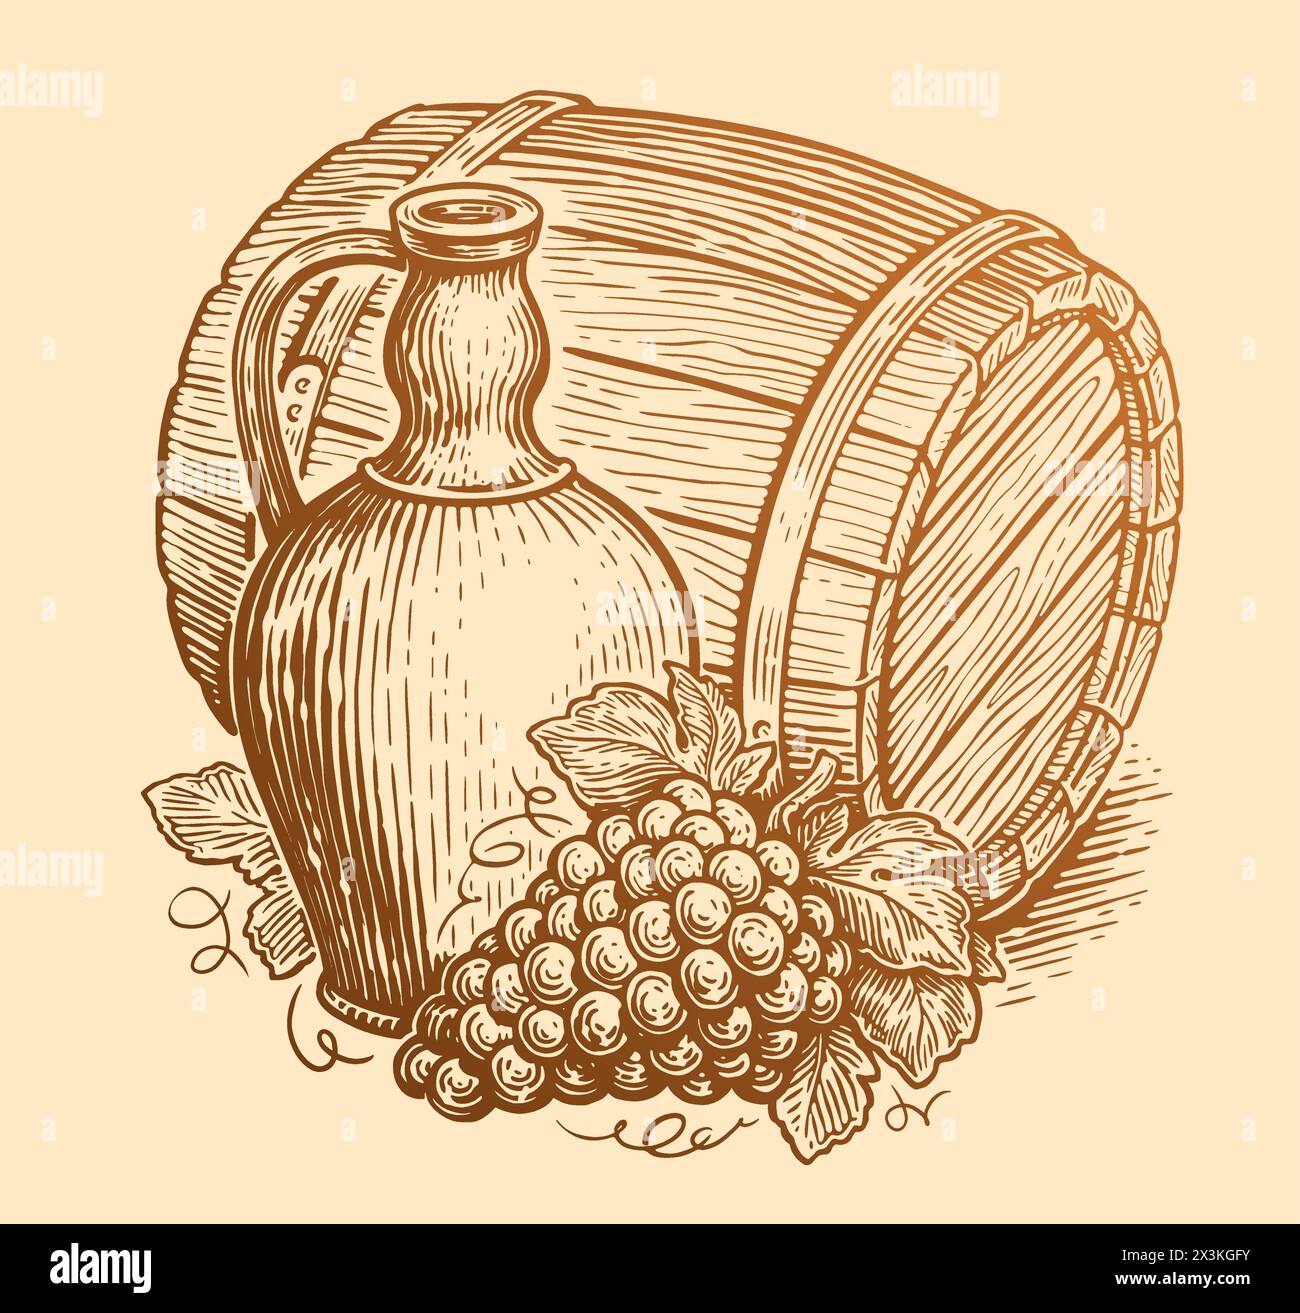 Tonneau en bois, cruche et raisins. Croquis de concept de vin. Illustration vectorielle vintage de cave Illustration de Vecteur